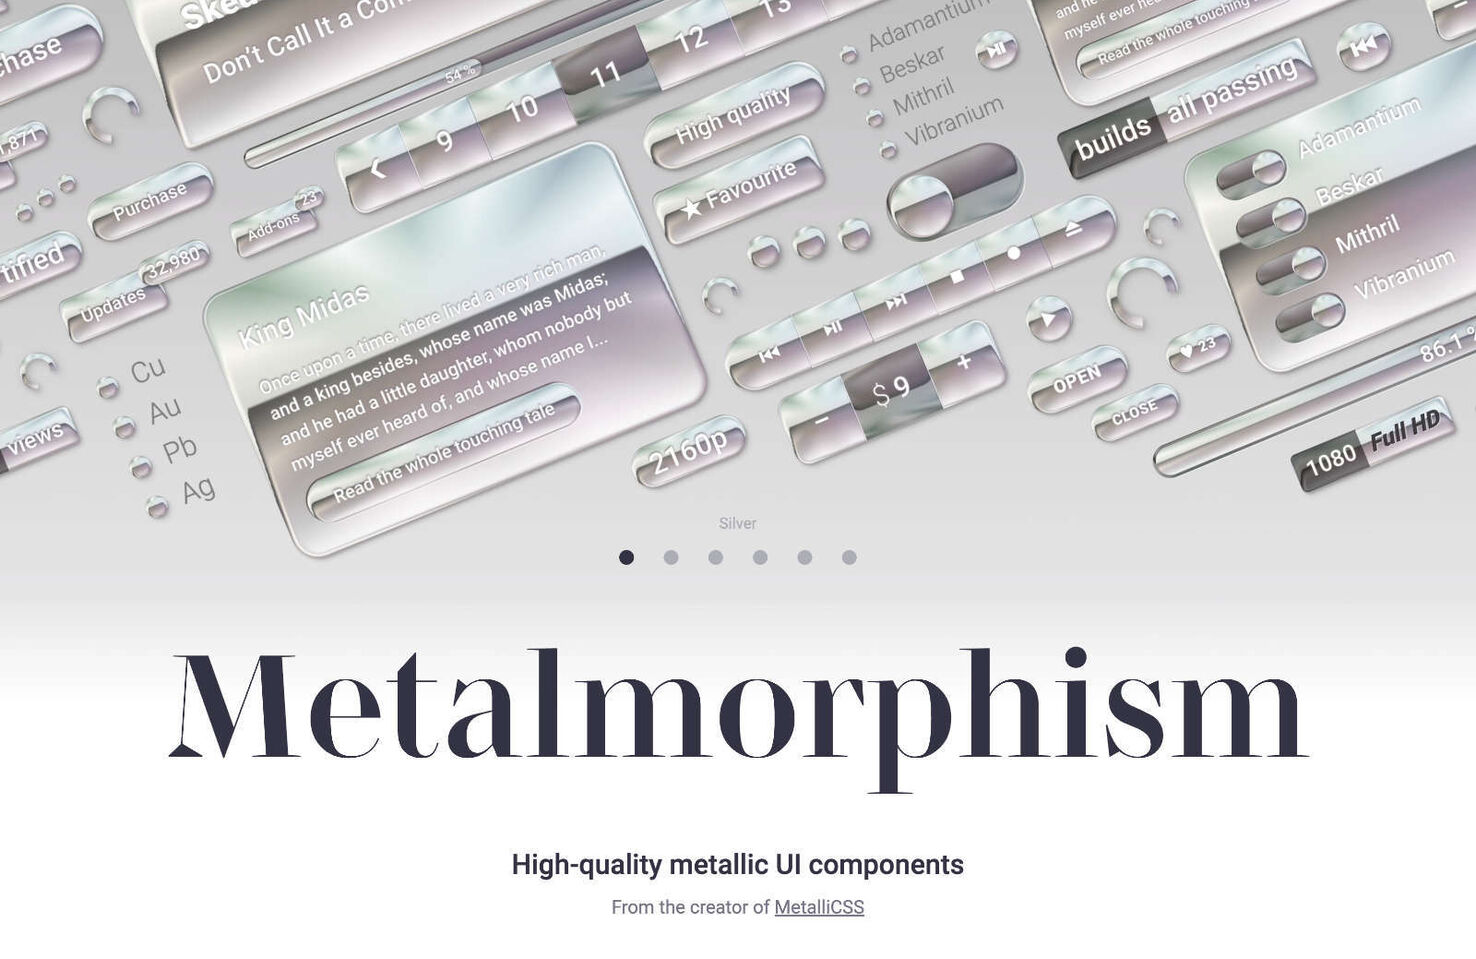 Metalmorphism